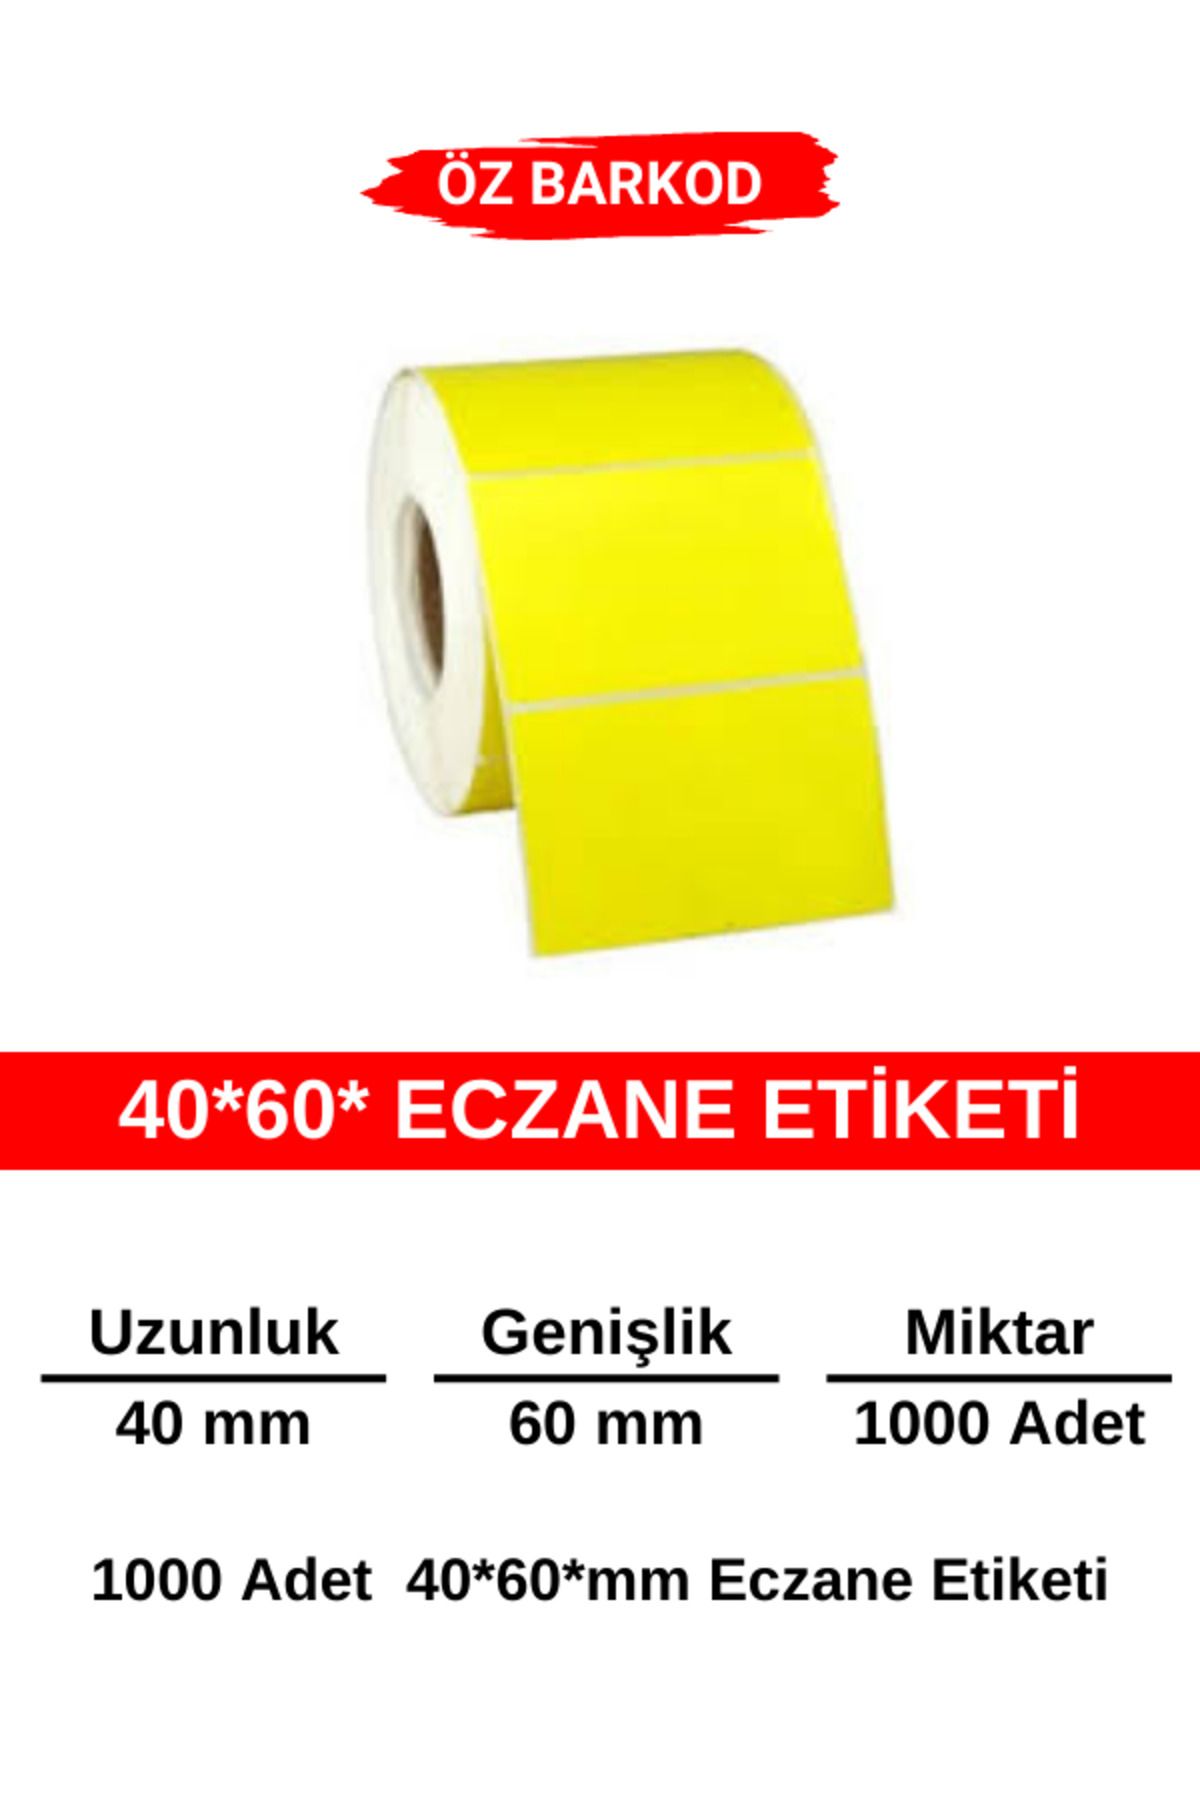 ÖZ BARKOD Eczane Etiketi 40*60 mm  - 1000 Adet - Sarı Etiket